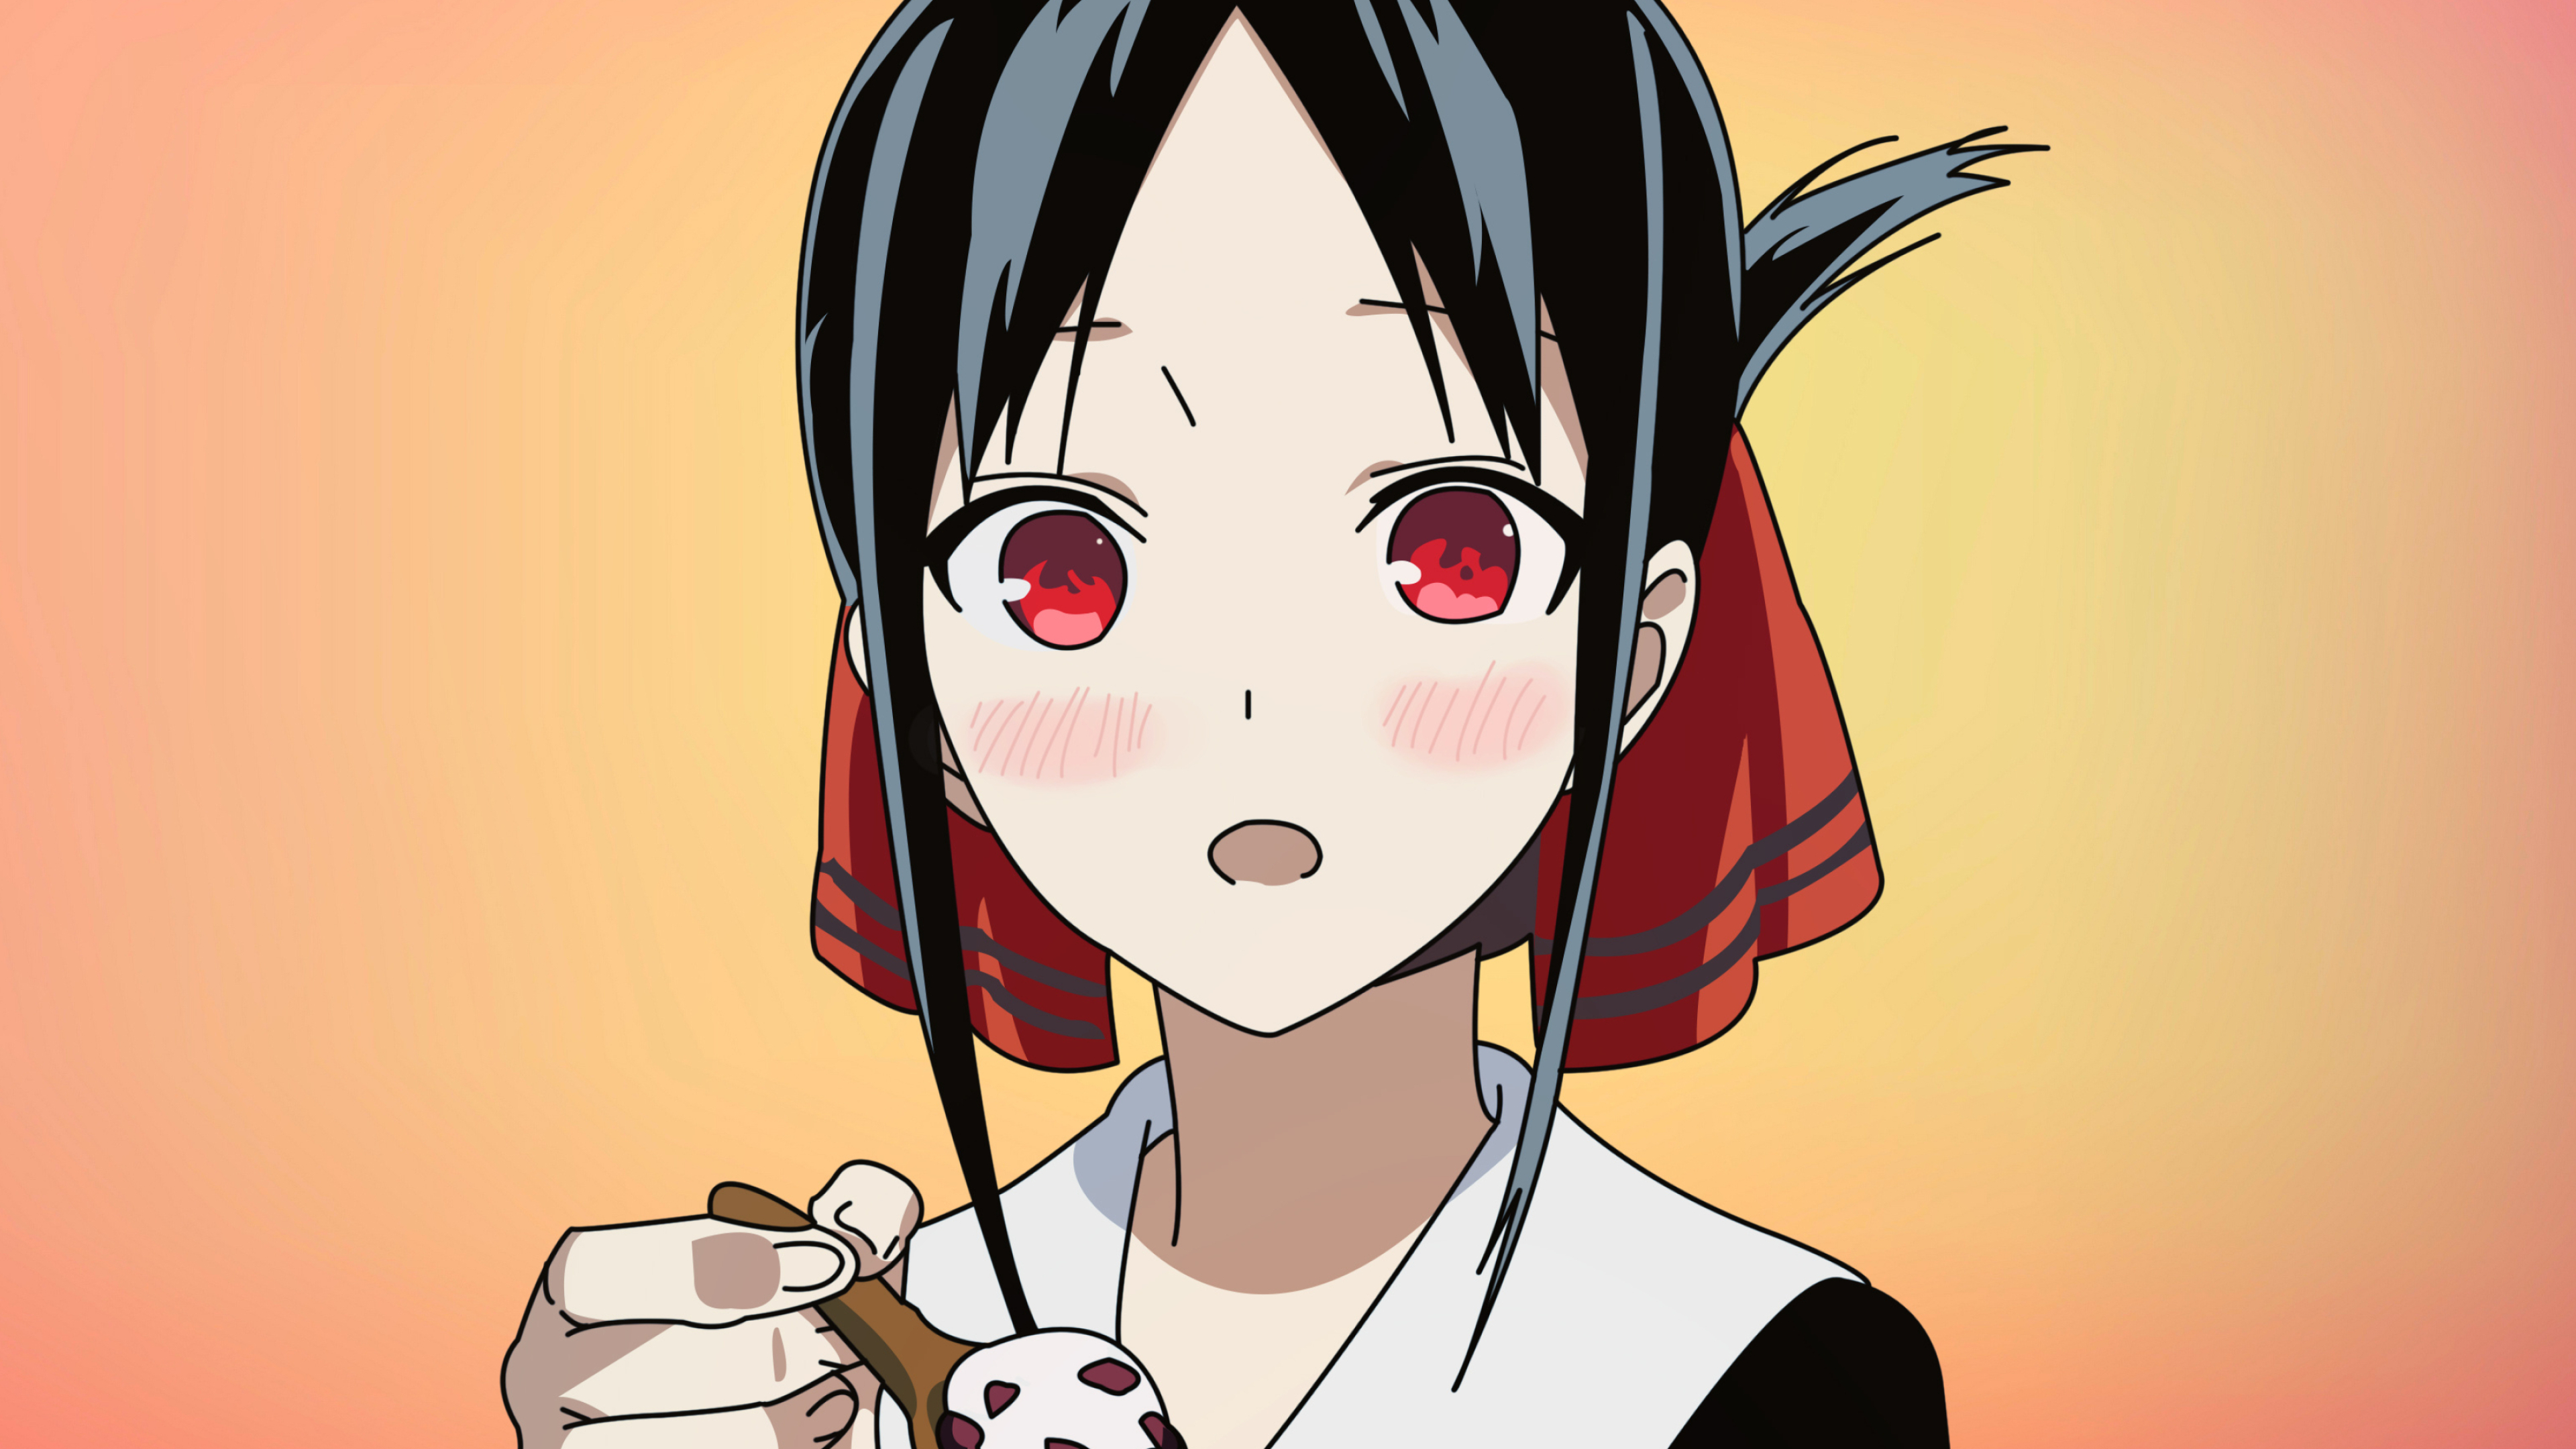 Kaguya Shinomiya, Fan art, Adorable anime girl, 3840x2160 4K Desktop